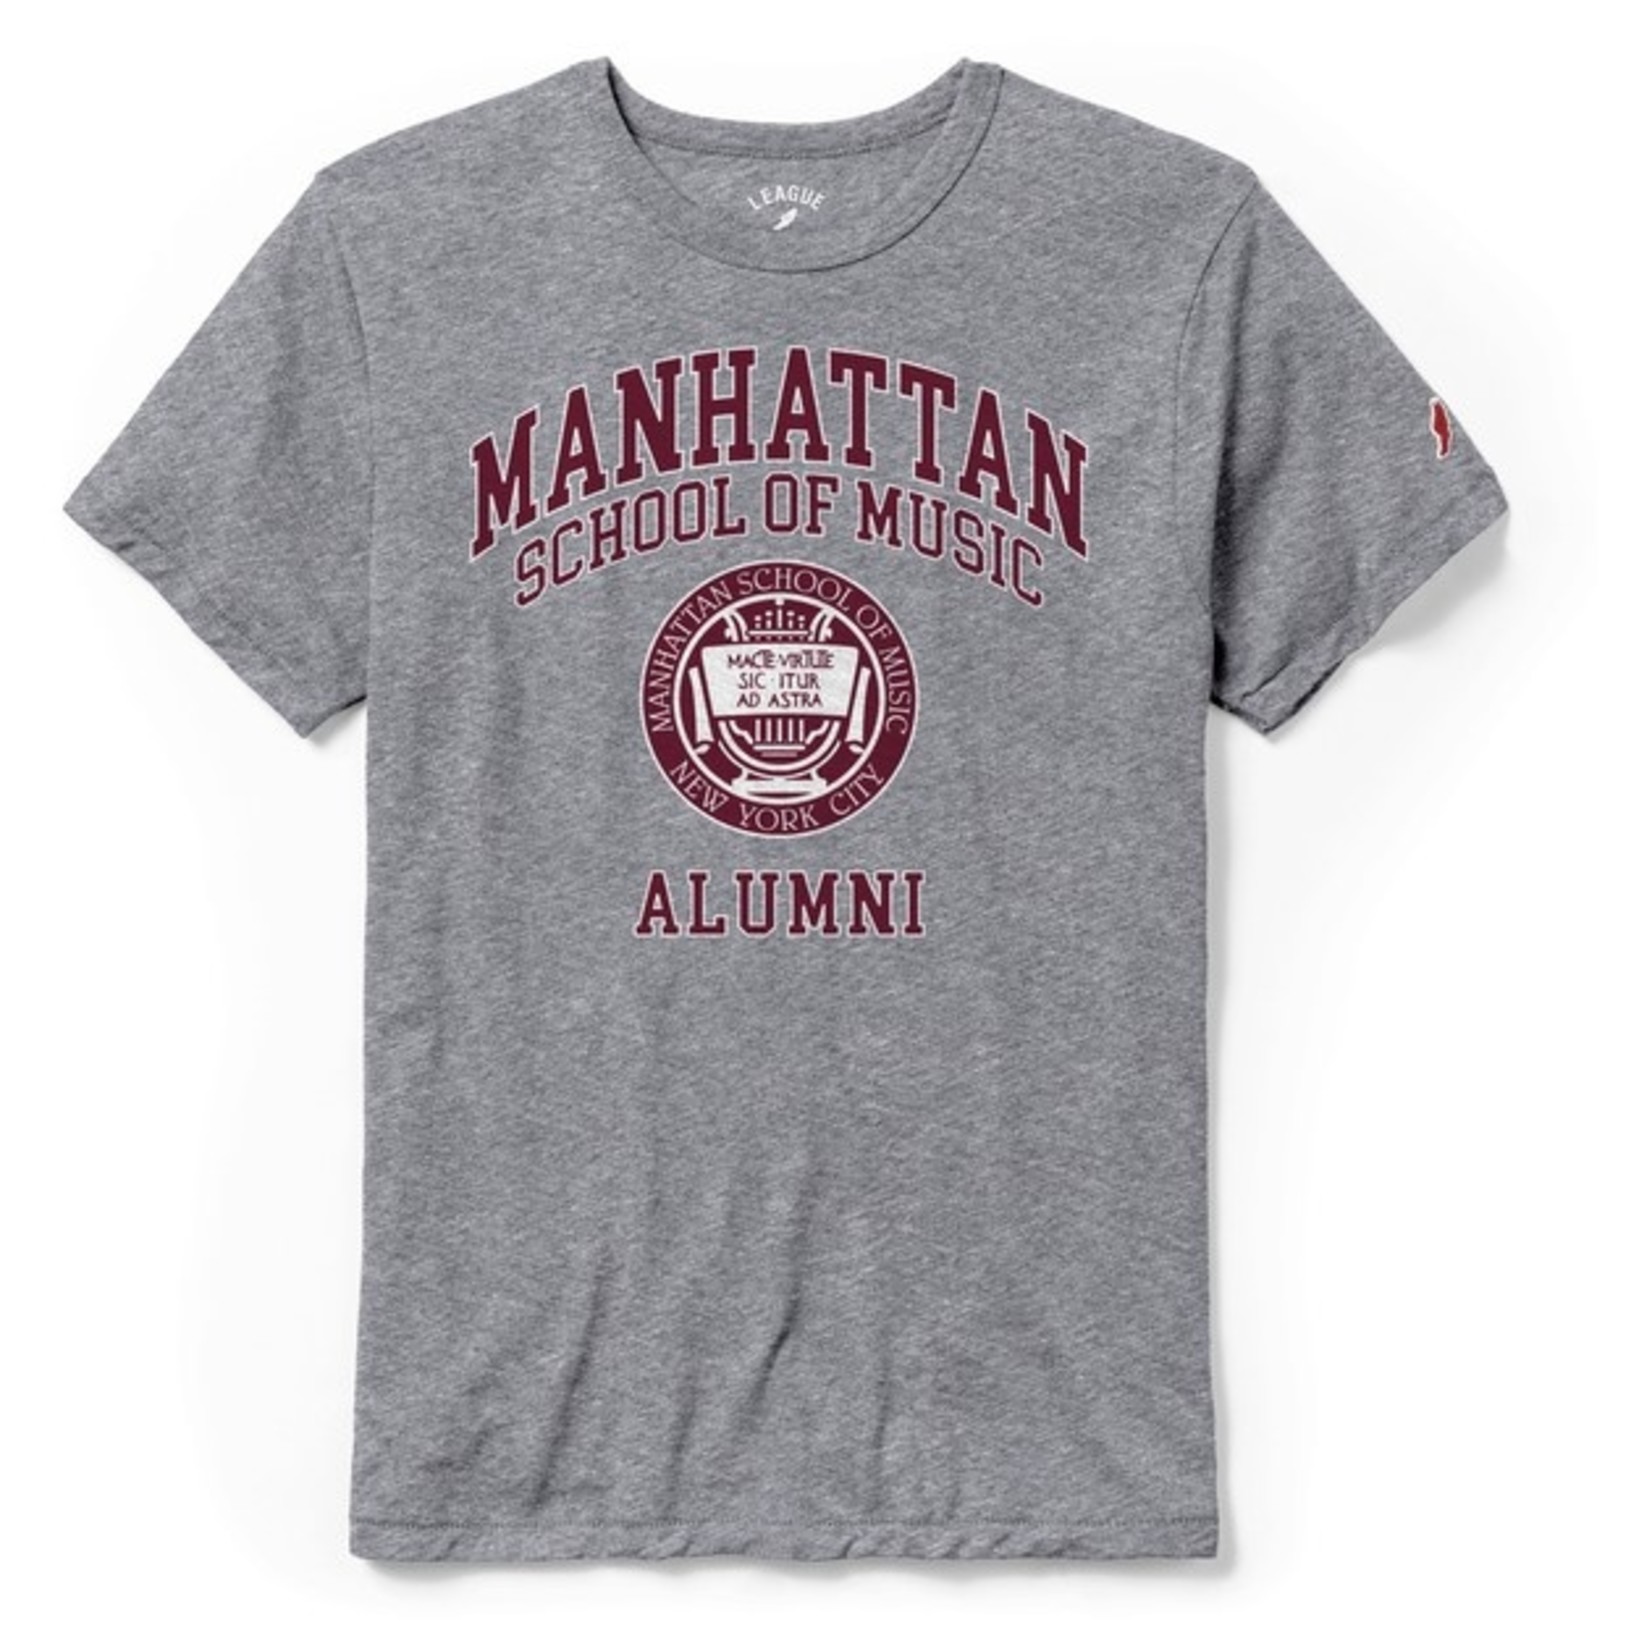 MSM Alumni T-shirt